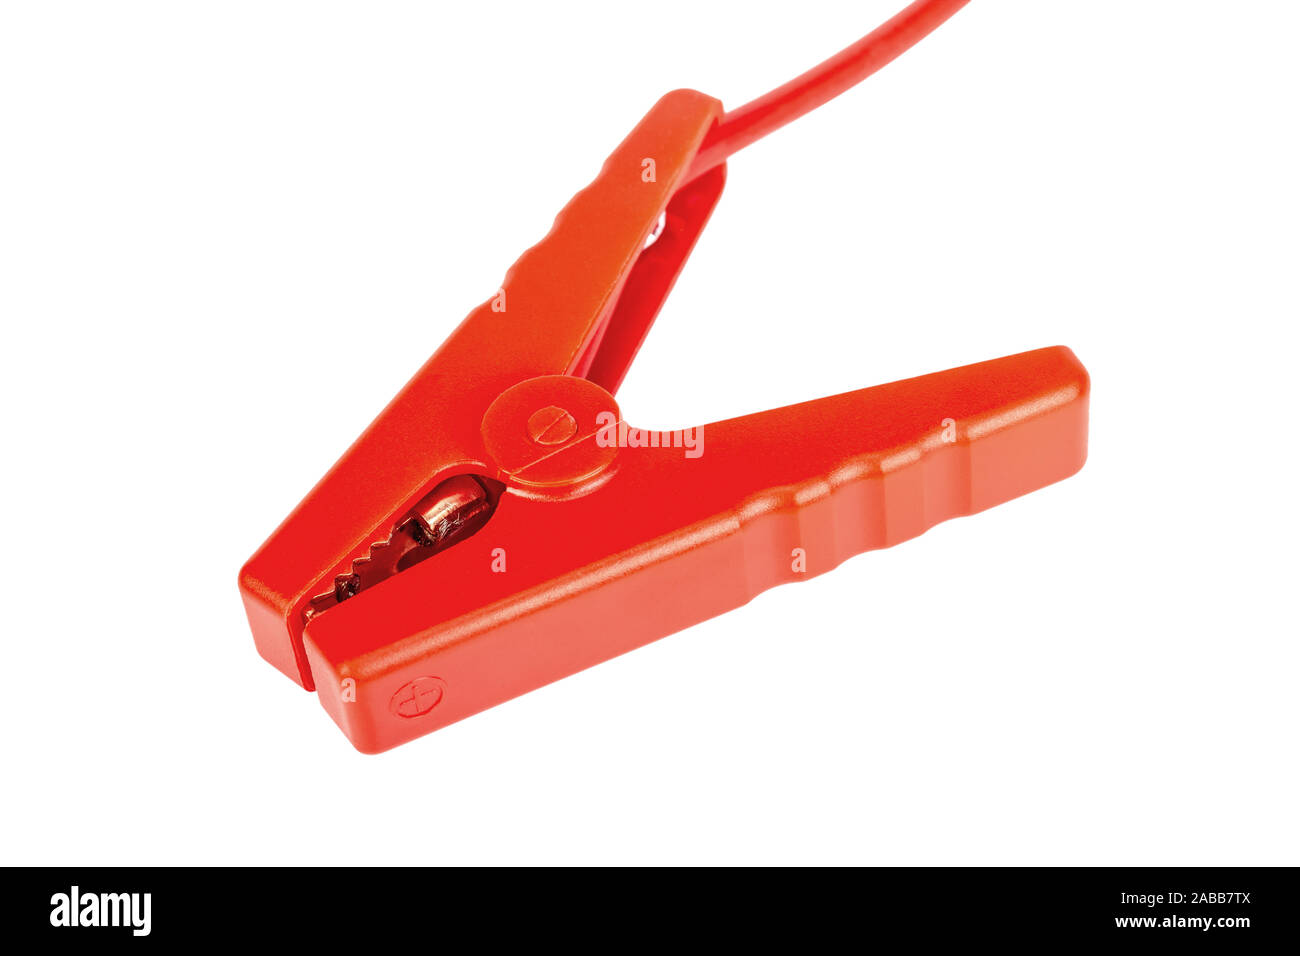 Rote Klemme für Überbrückungskabel Booster oder Ladegerät Autobatterie auf weißem Hintergrund. Stockfoto